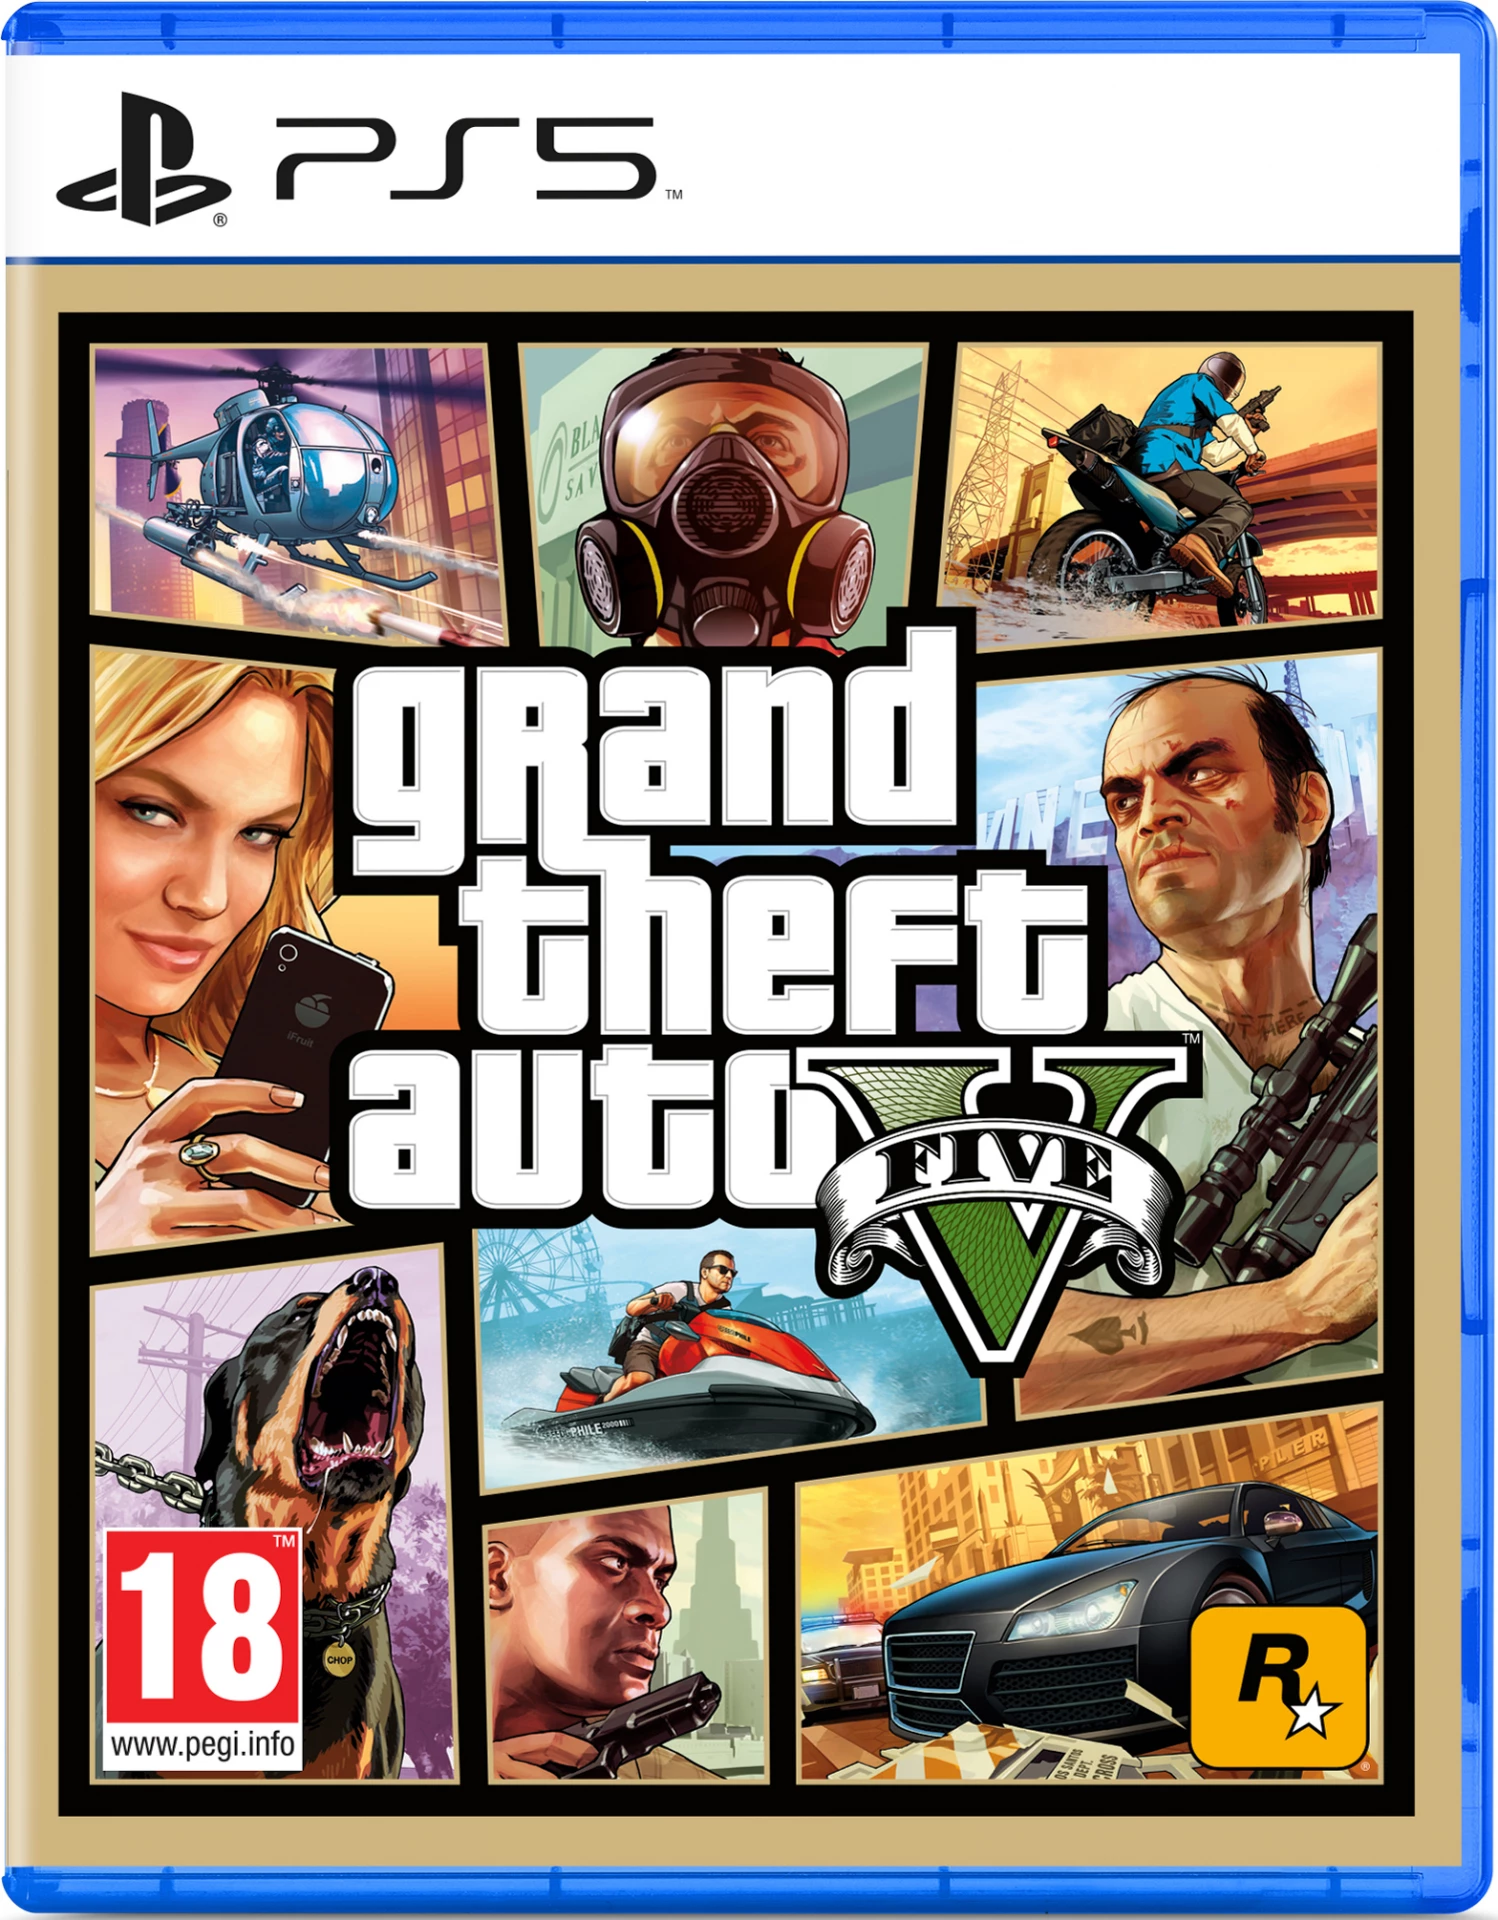 Grand Theft Auto 5 (GTA V) voor de PlayStation 5 preorder plaatsen op nedgame.nl